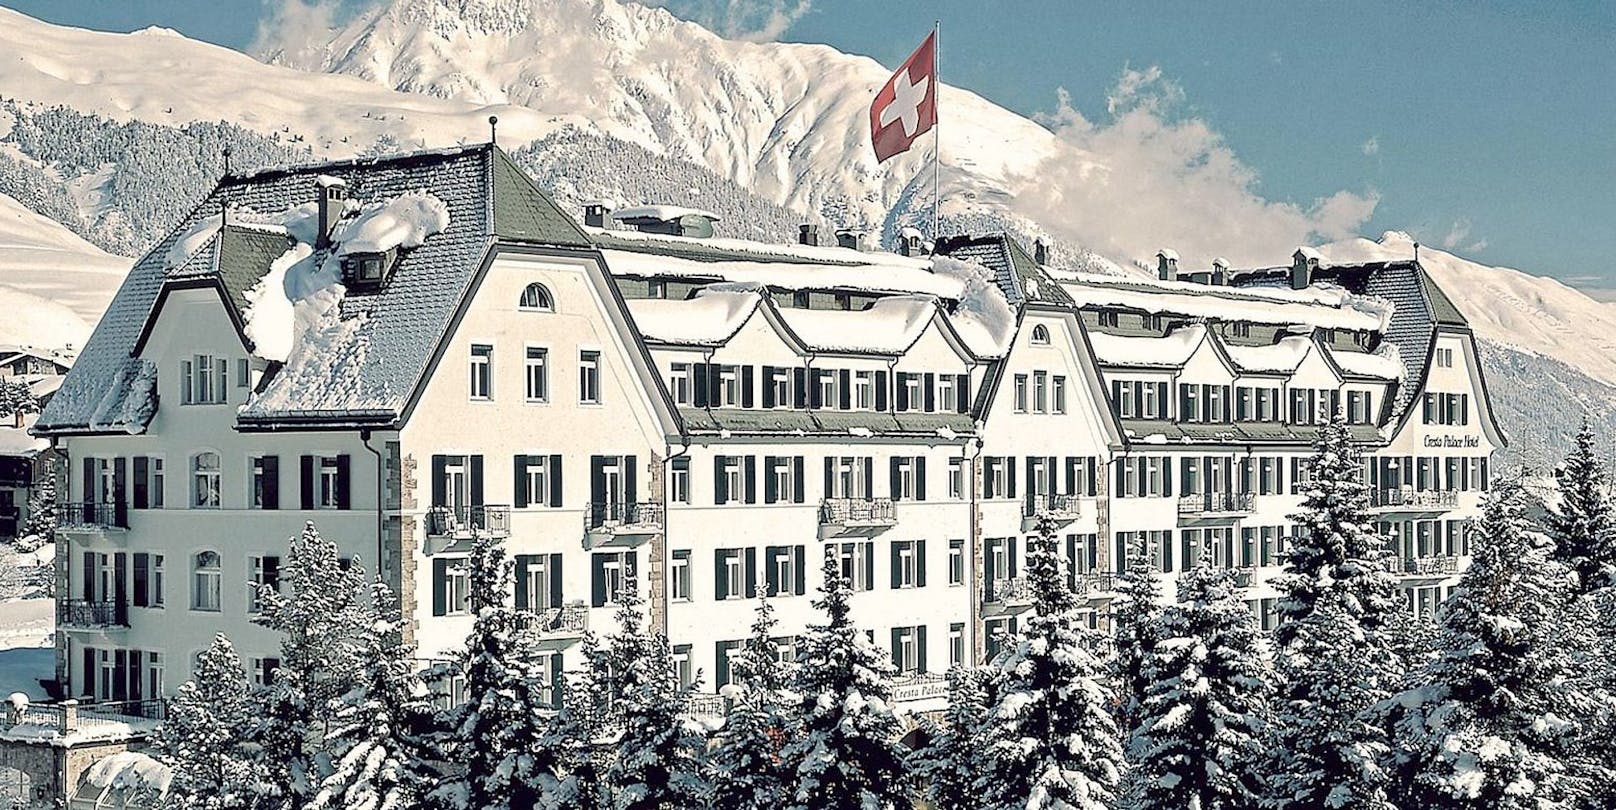 Das "Cresta Palace" in St. Moritz